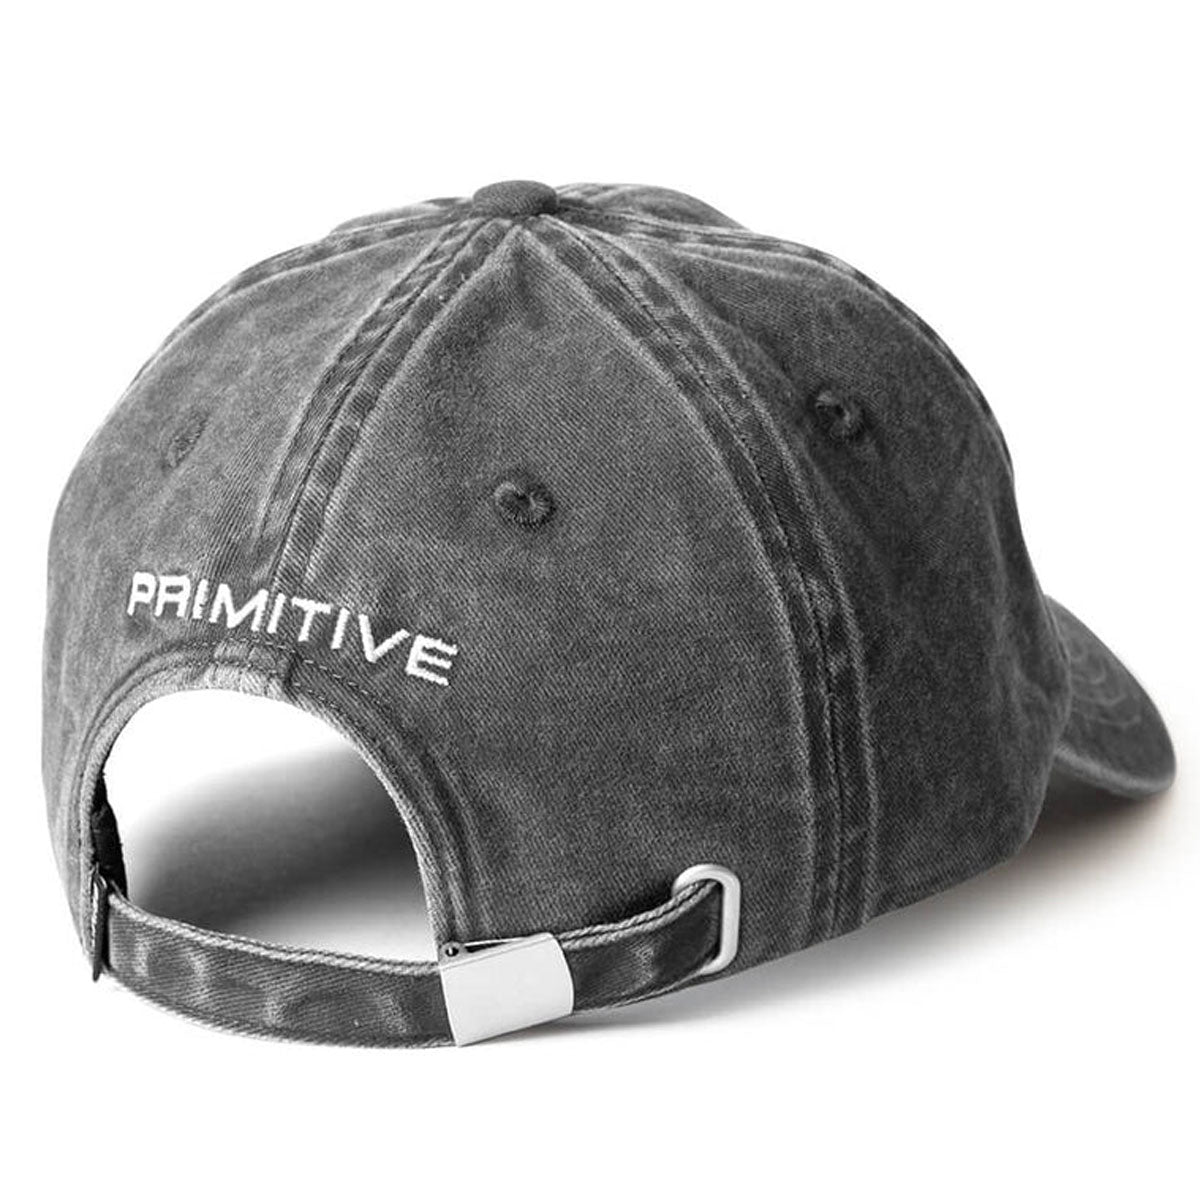 Primitive Rosey Over-dyed Strapback Hat - Black image 2